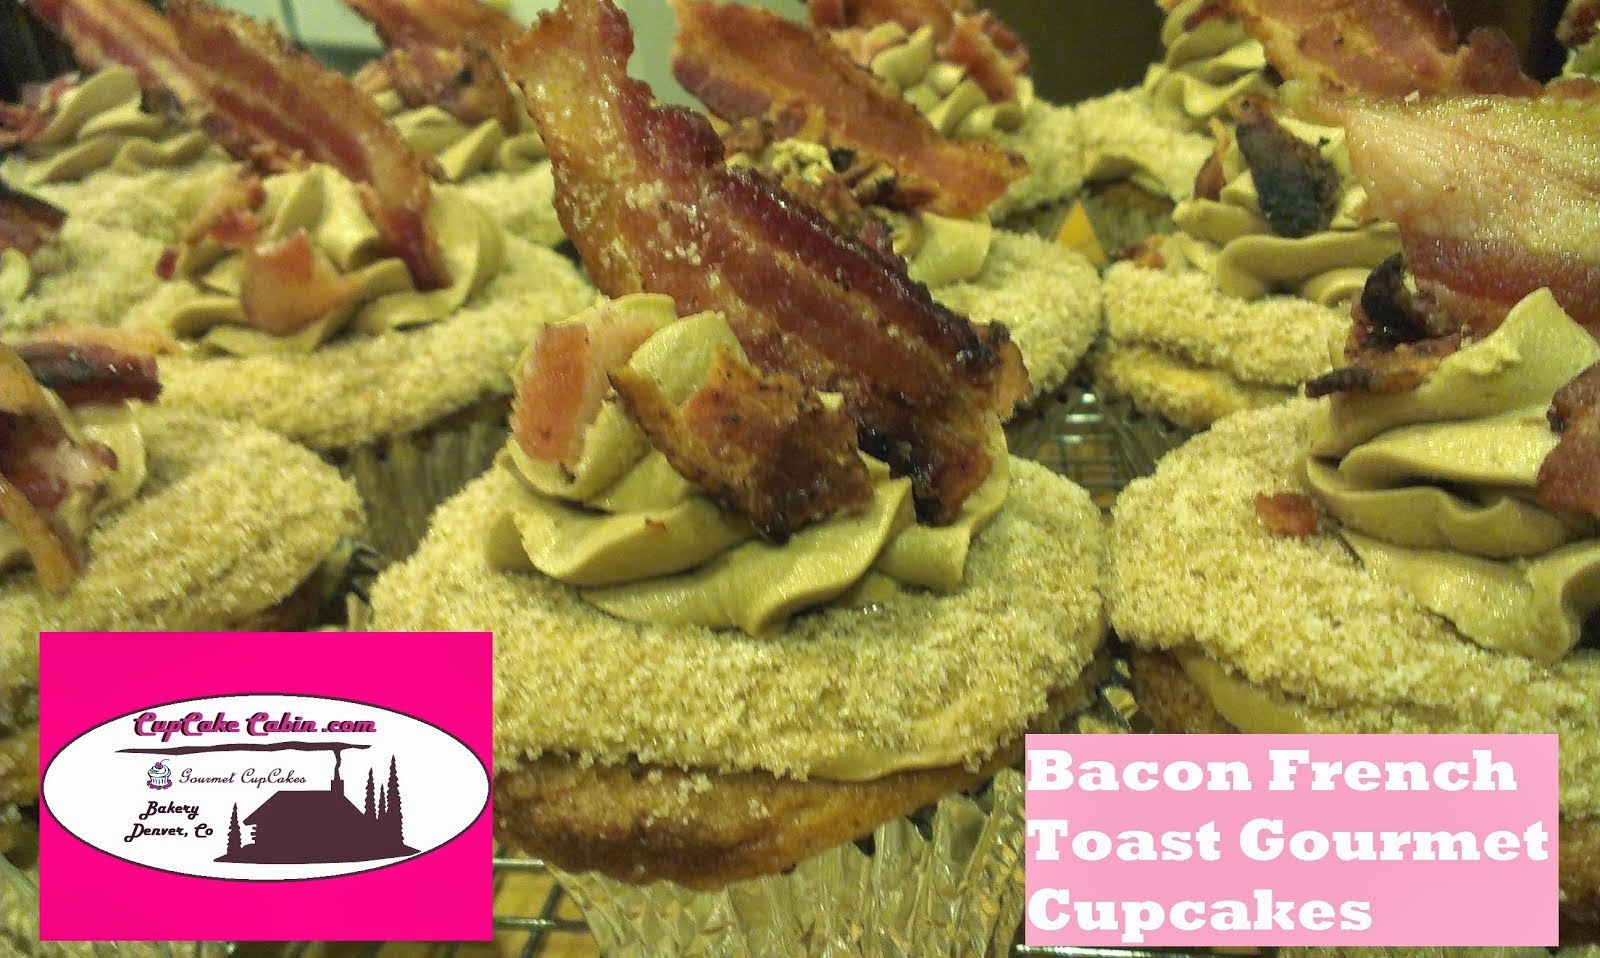 Bacon Cupcakes